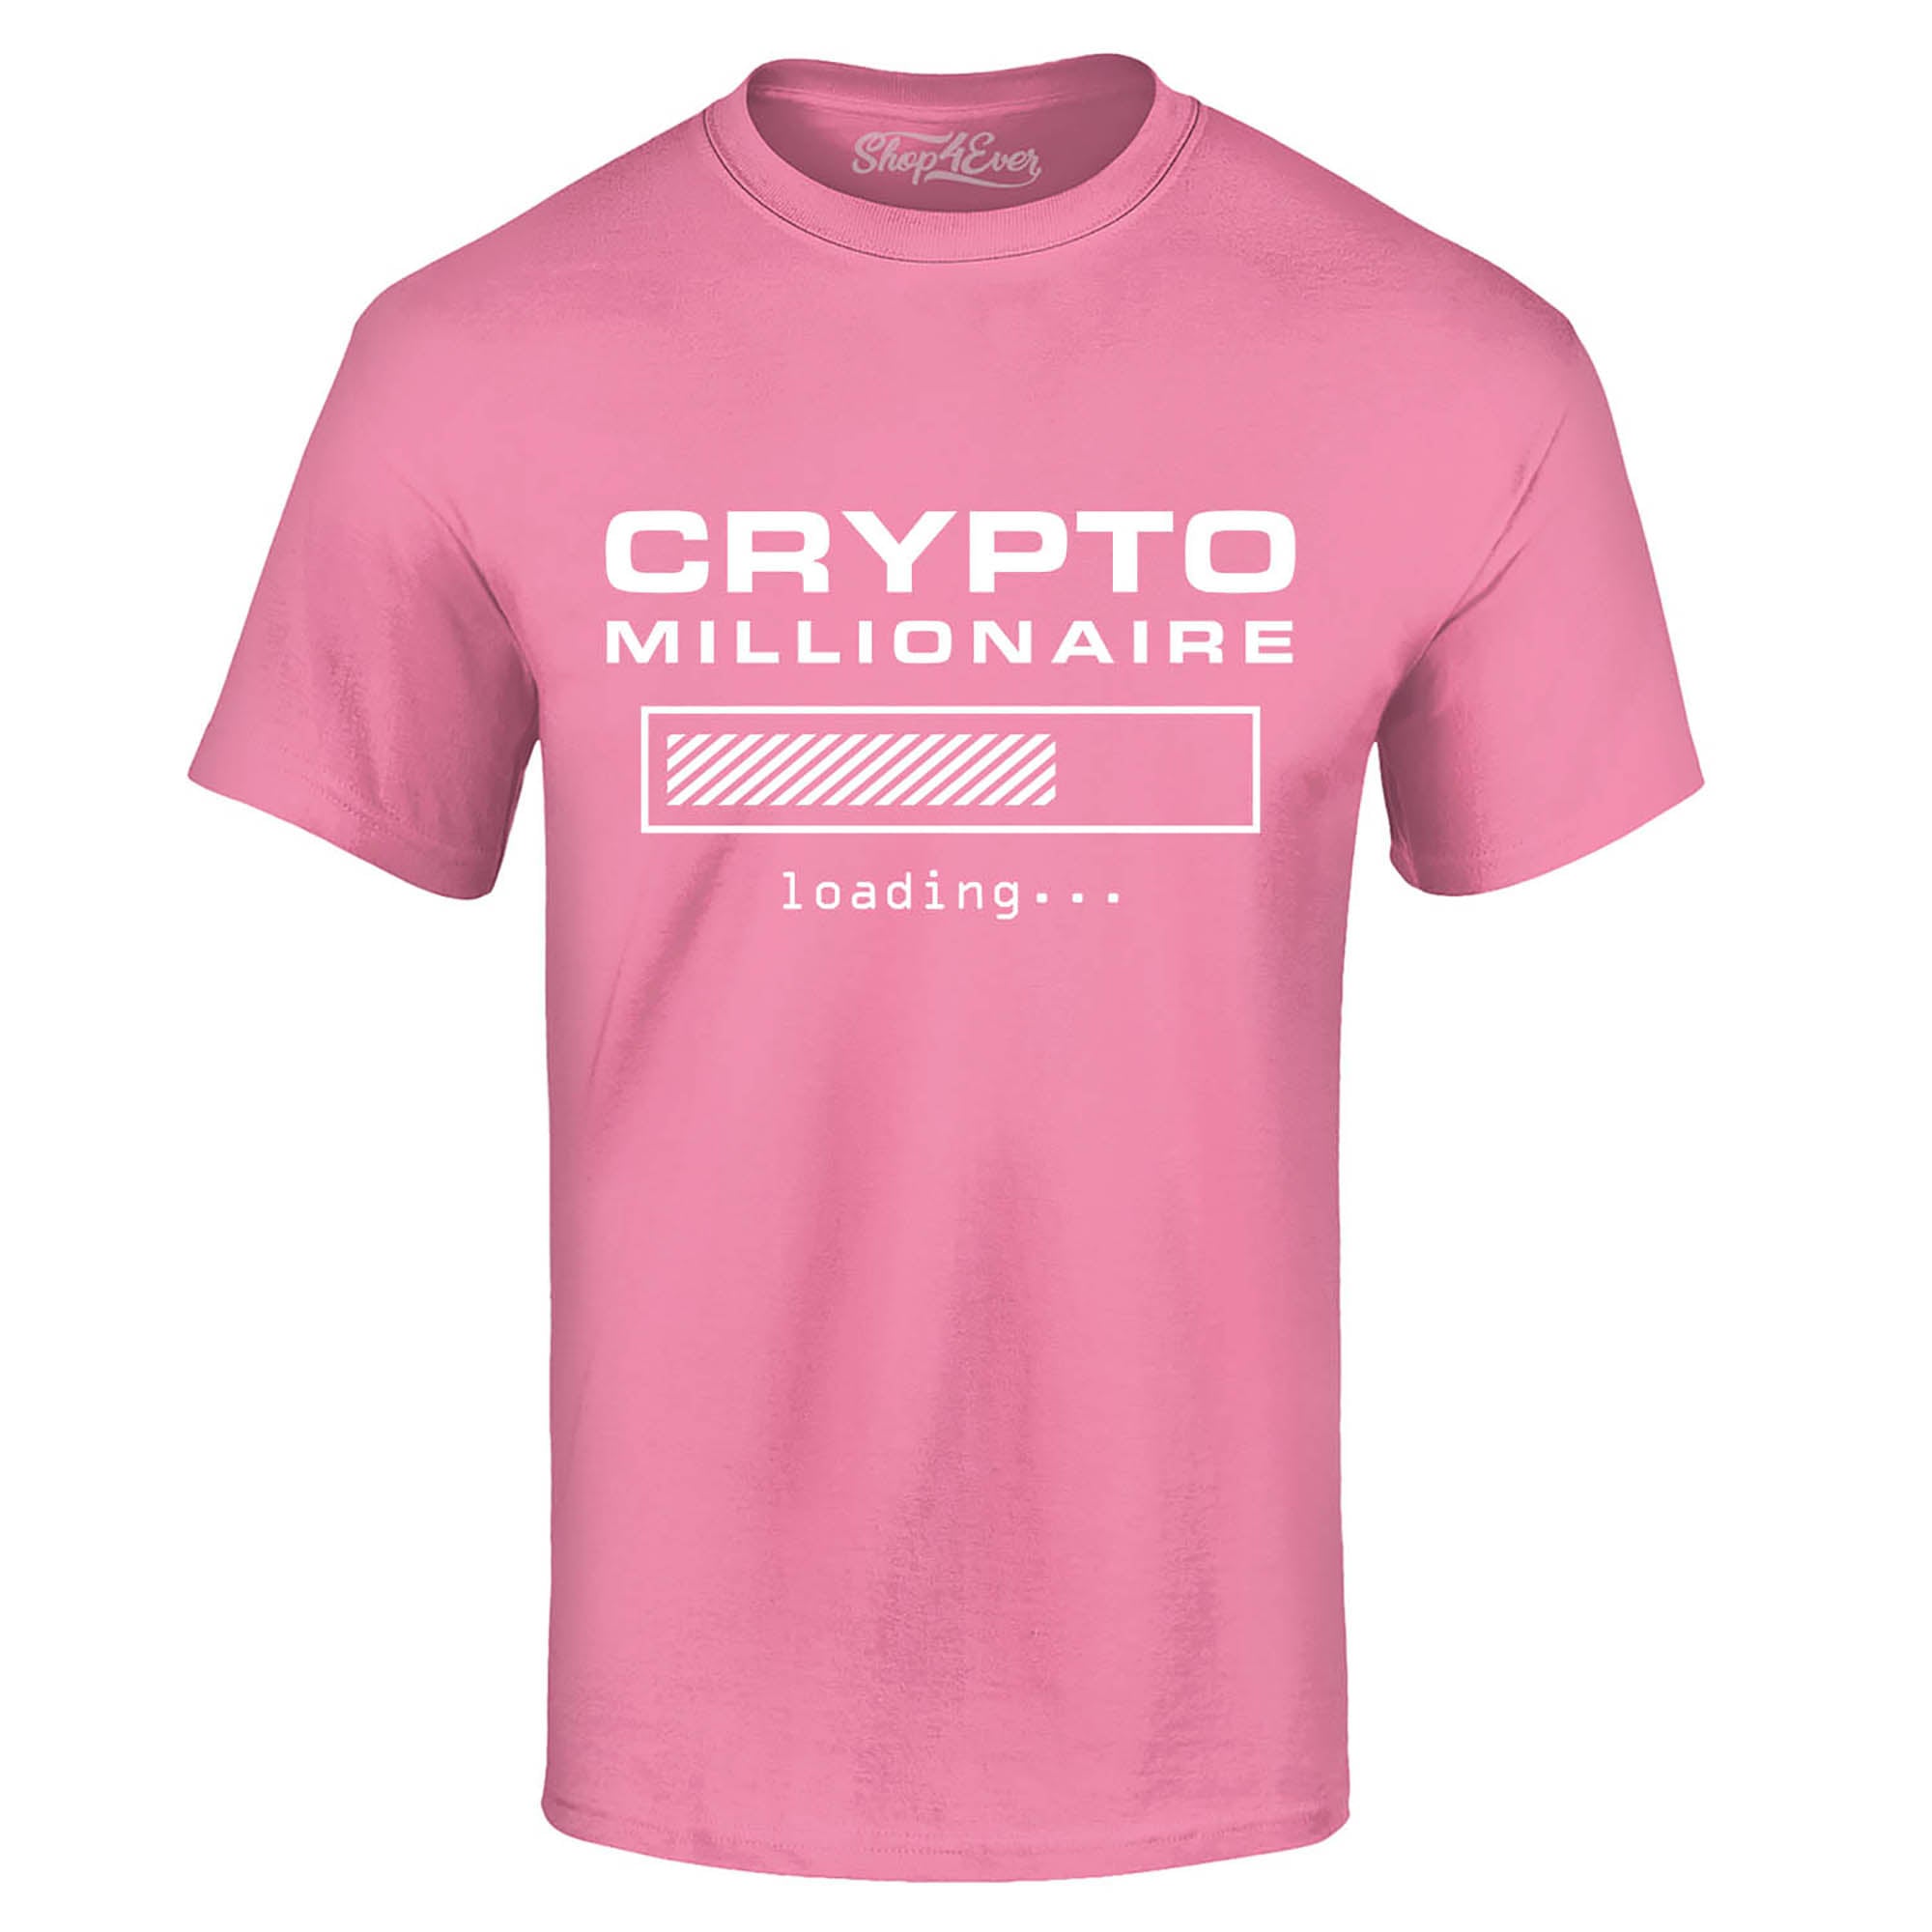 Crypto Millionaire Loading… T-Shirt